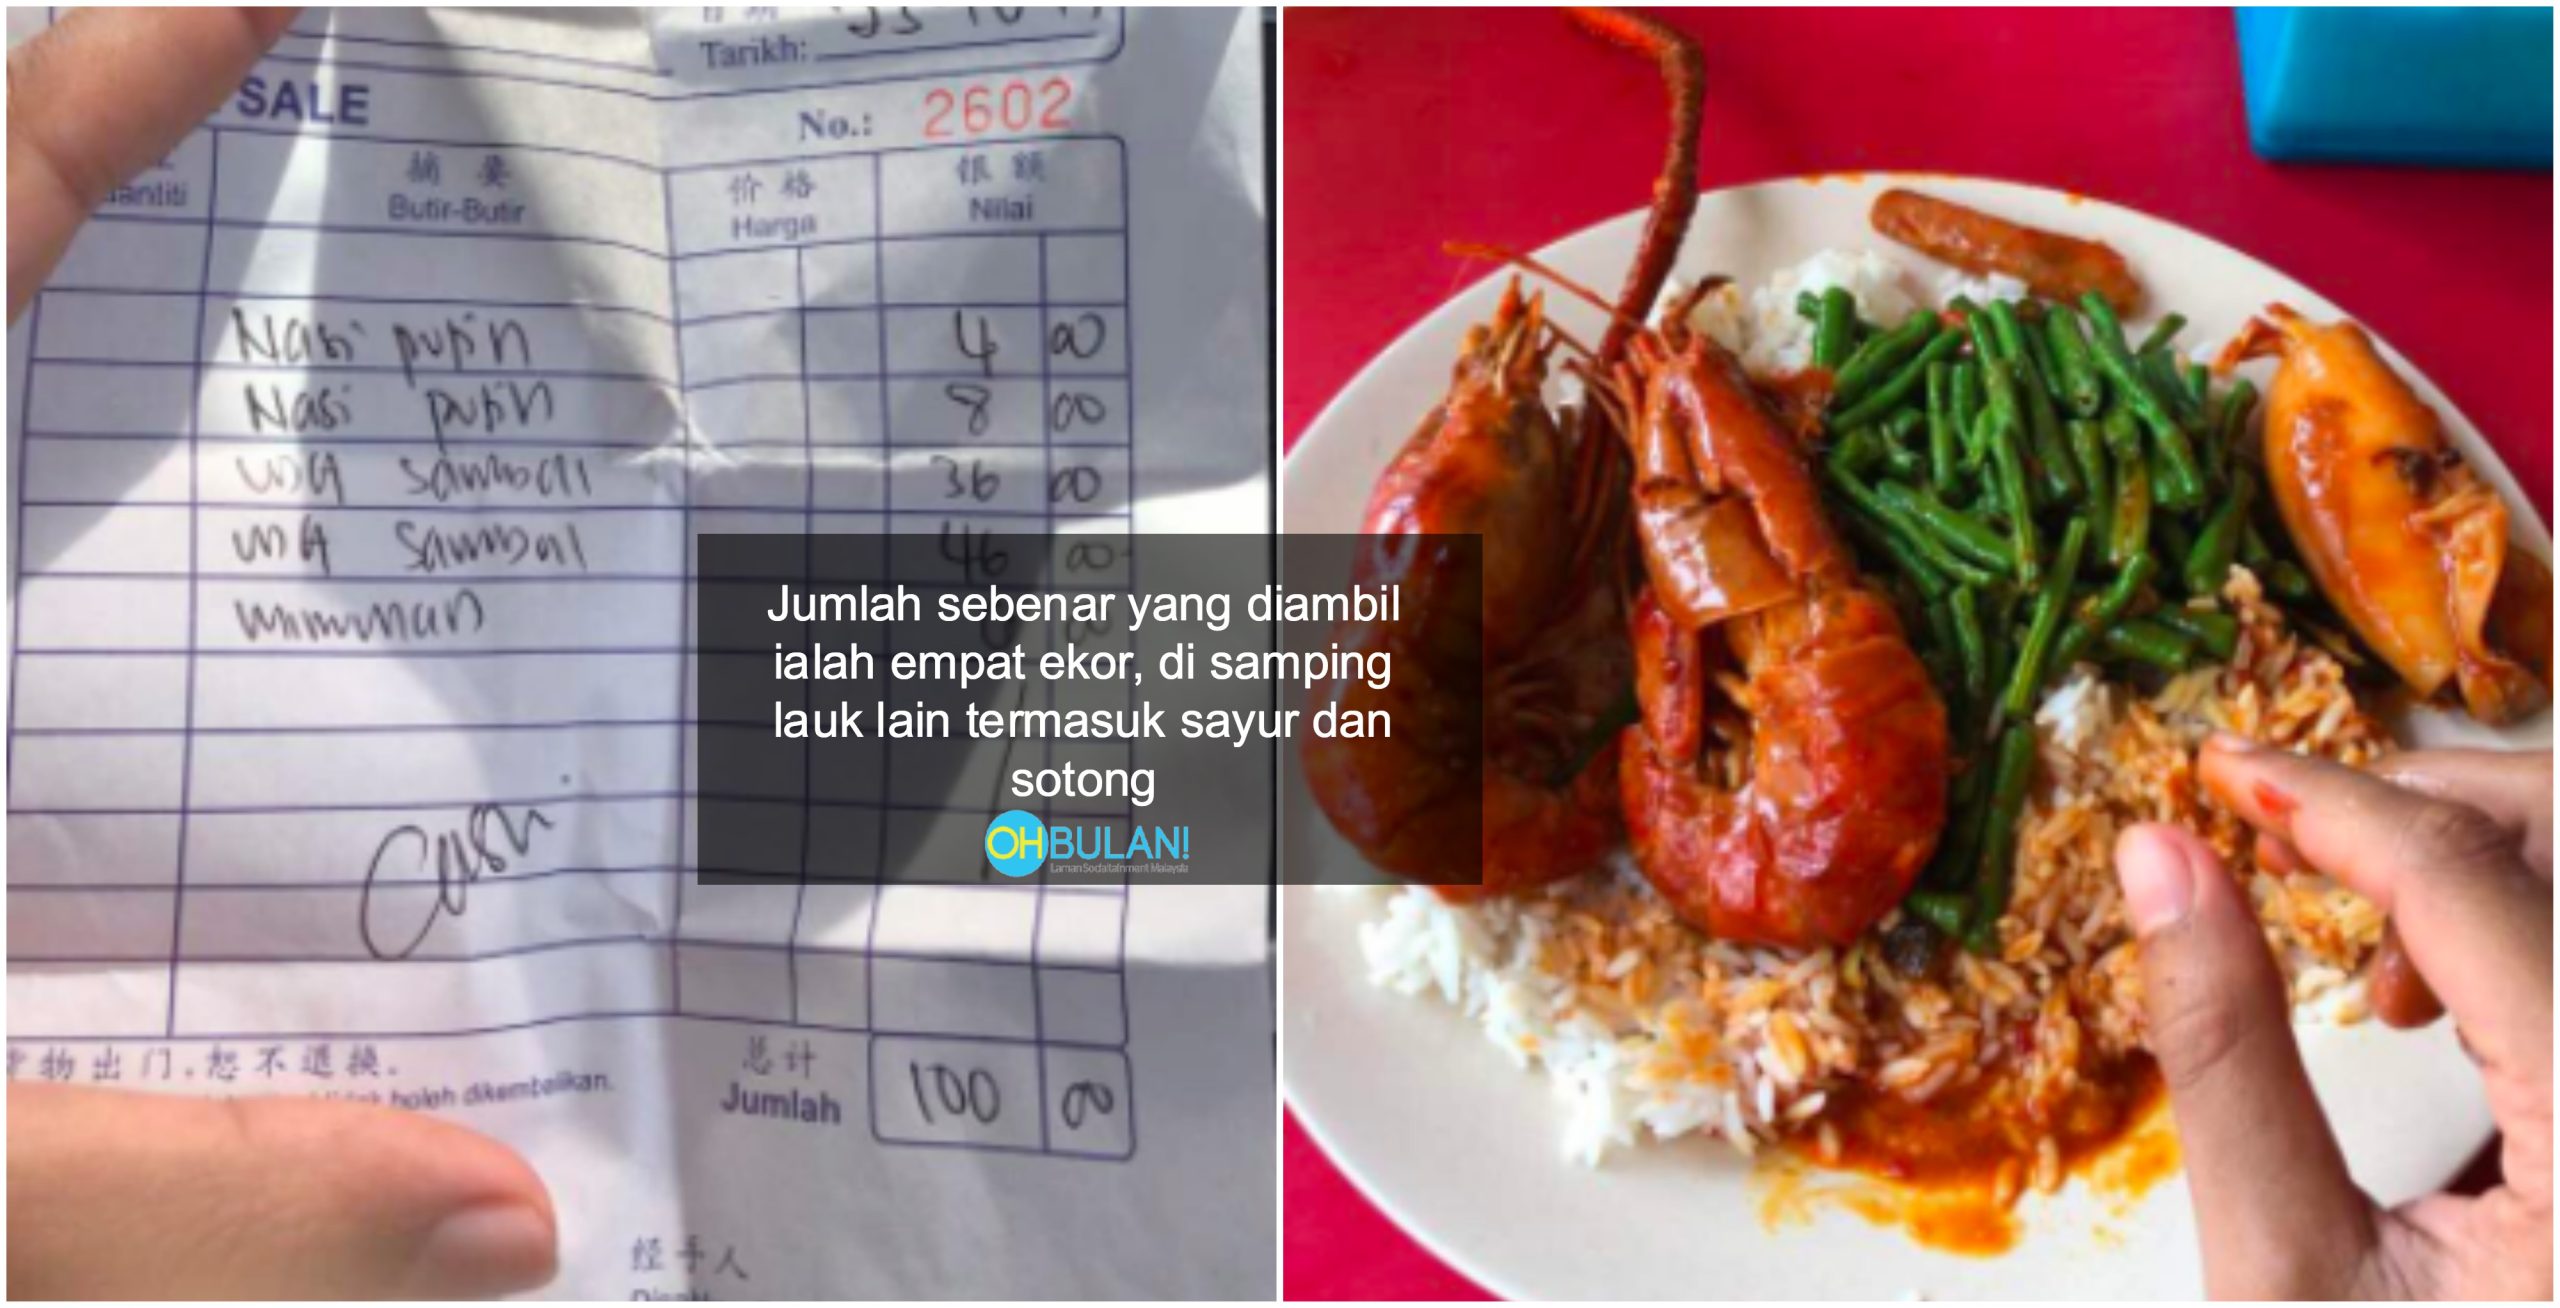 ‘Harga Makanan Berpatutan’ – Viral Harga Dua Pinggan Nasi RM100, Ini Respon KPDNKK